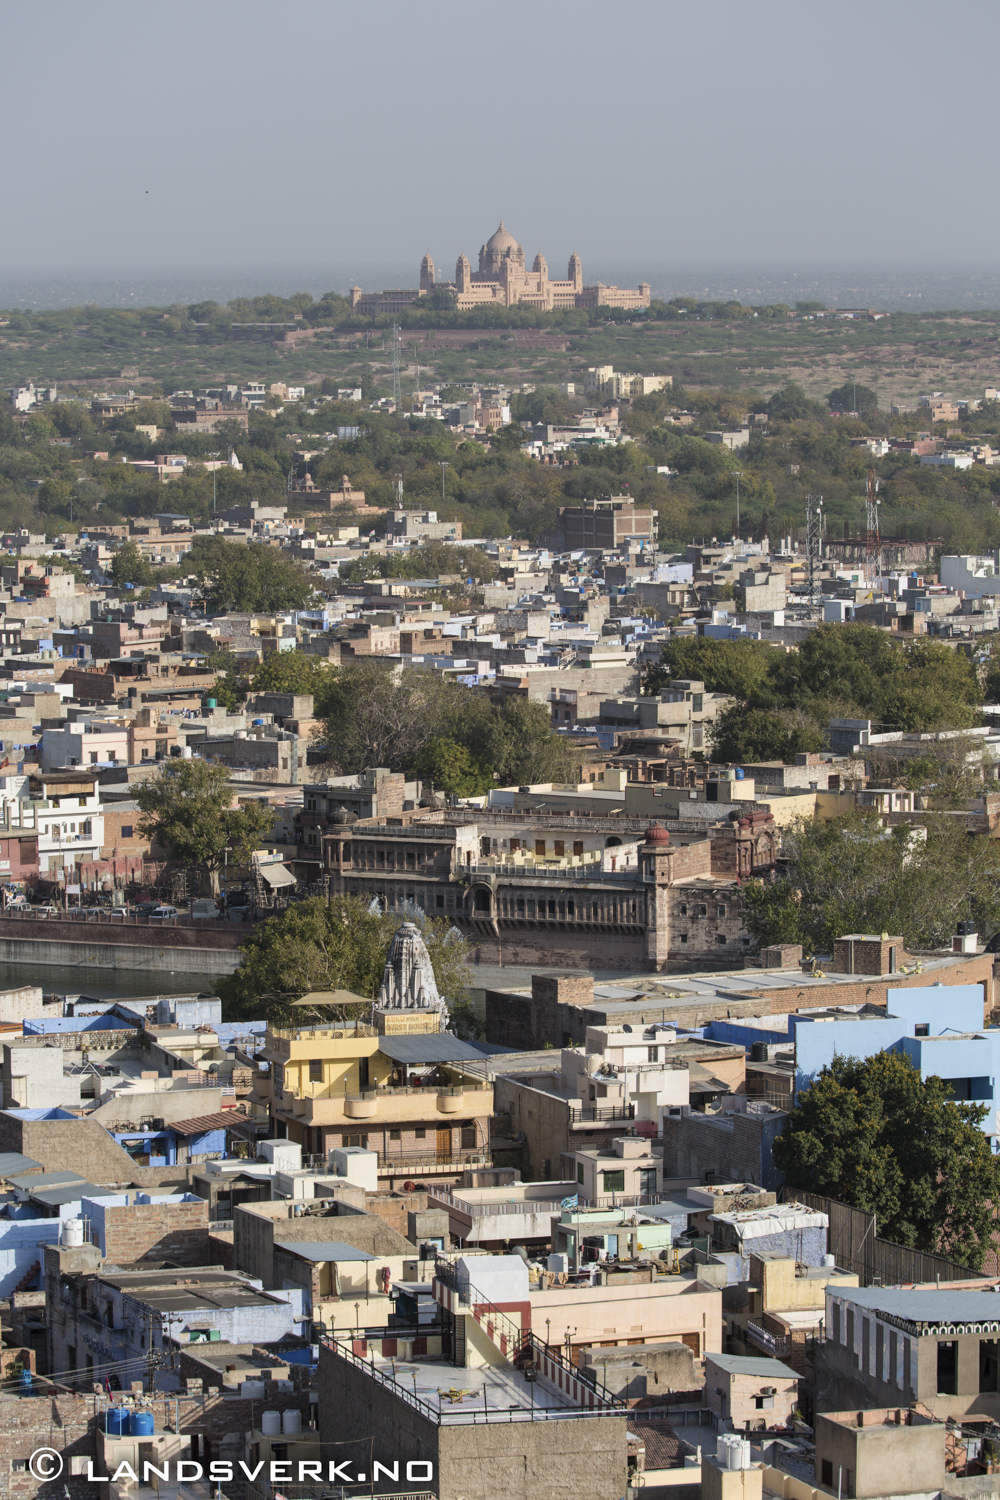 Jodhpur, India. 

(Canon EOS 5D Mark III / Canon EF 70-200mm f/2.8 L IS II USM / Canon 2x EF Extender III)